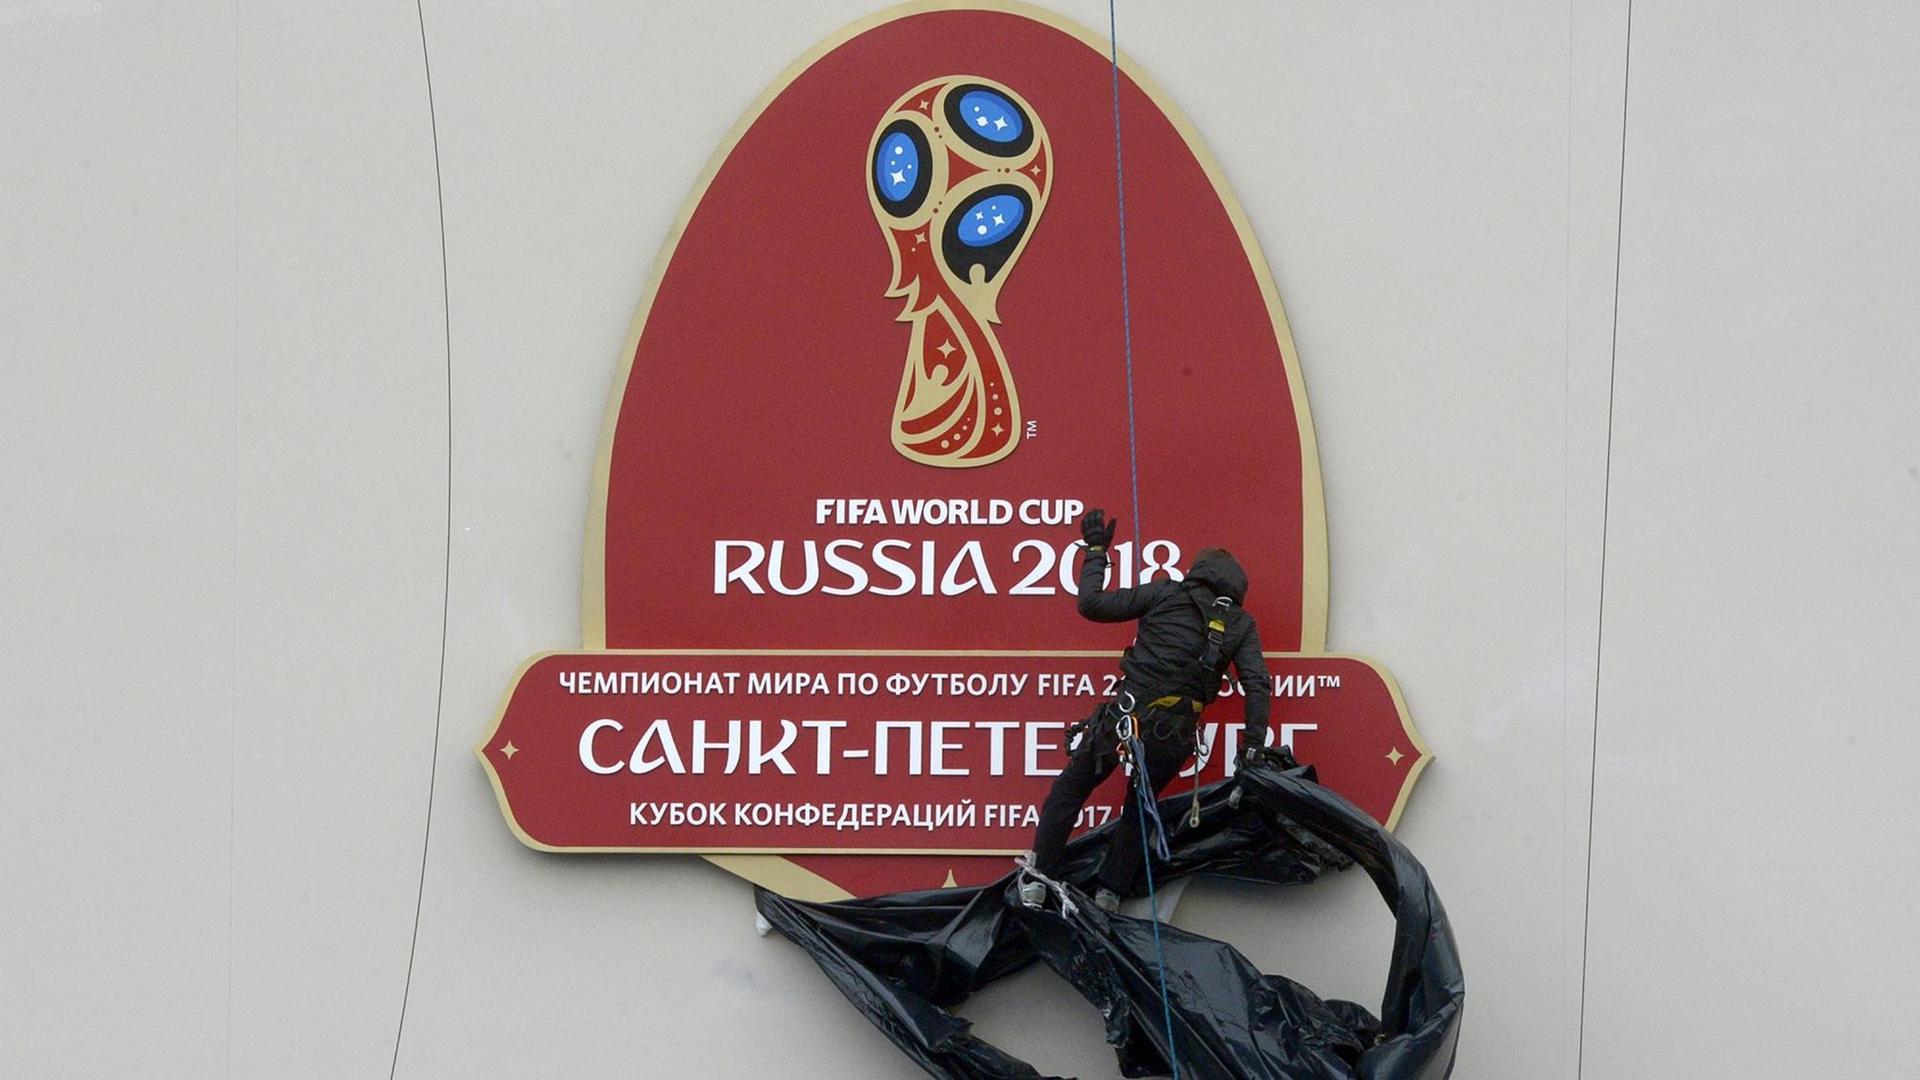 Das Logo für die Fußball-WM 2018 in Russland.